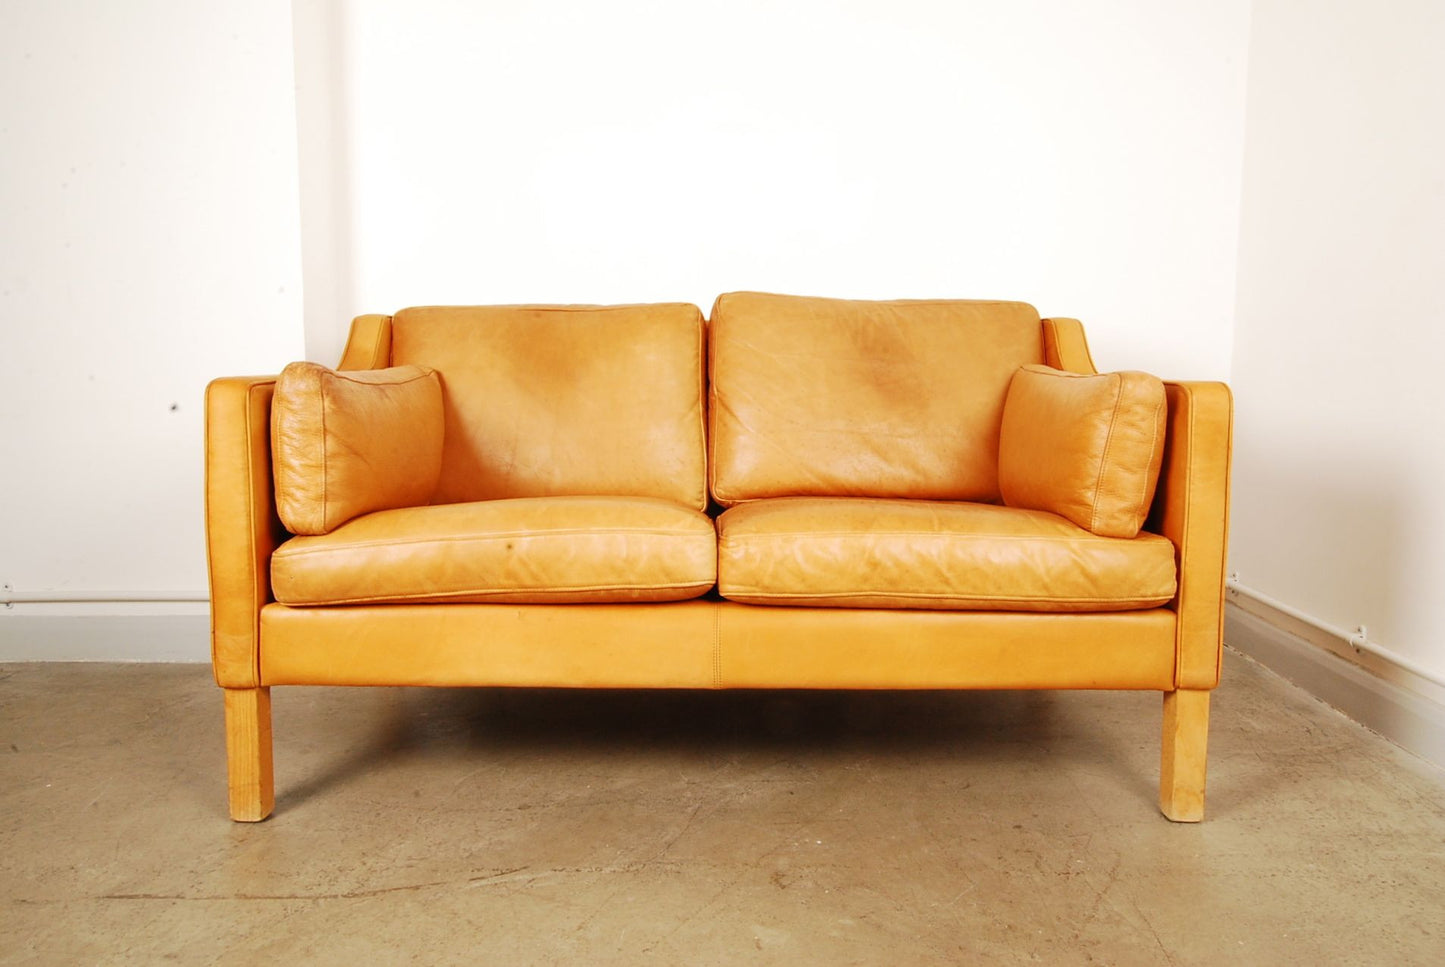 Tan two seat leather sofa